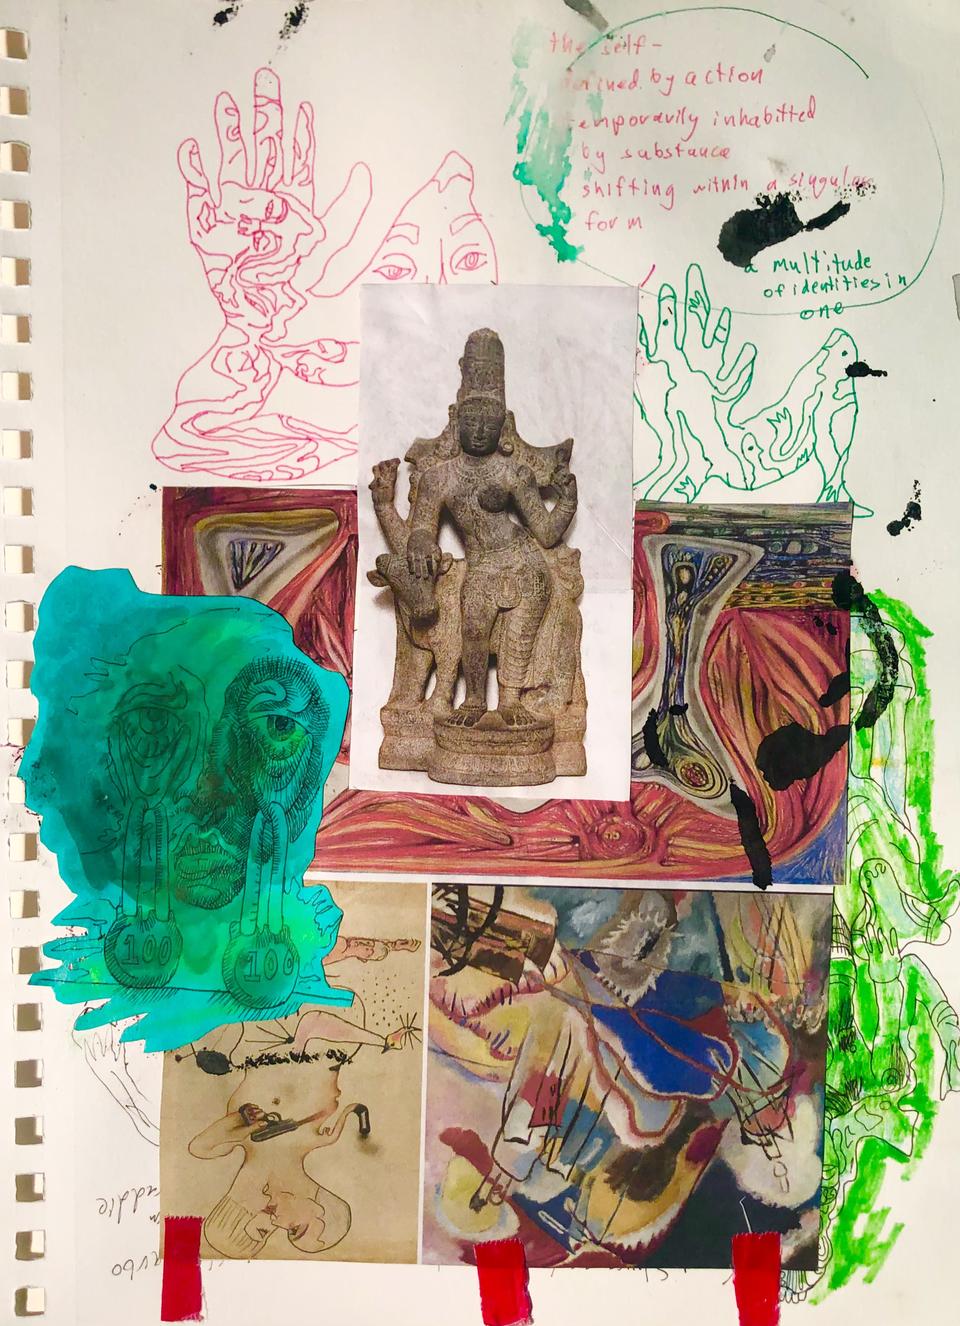 Niko Woron's sketchbook